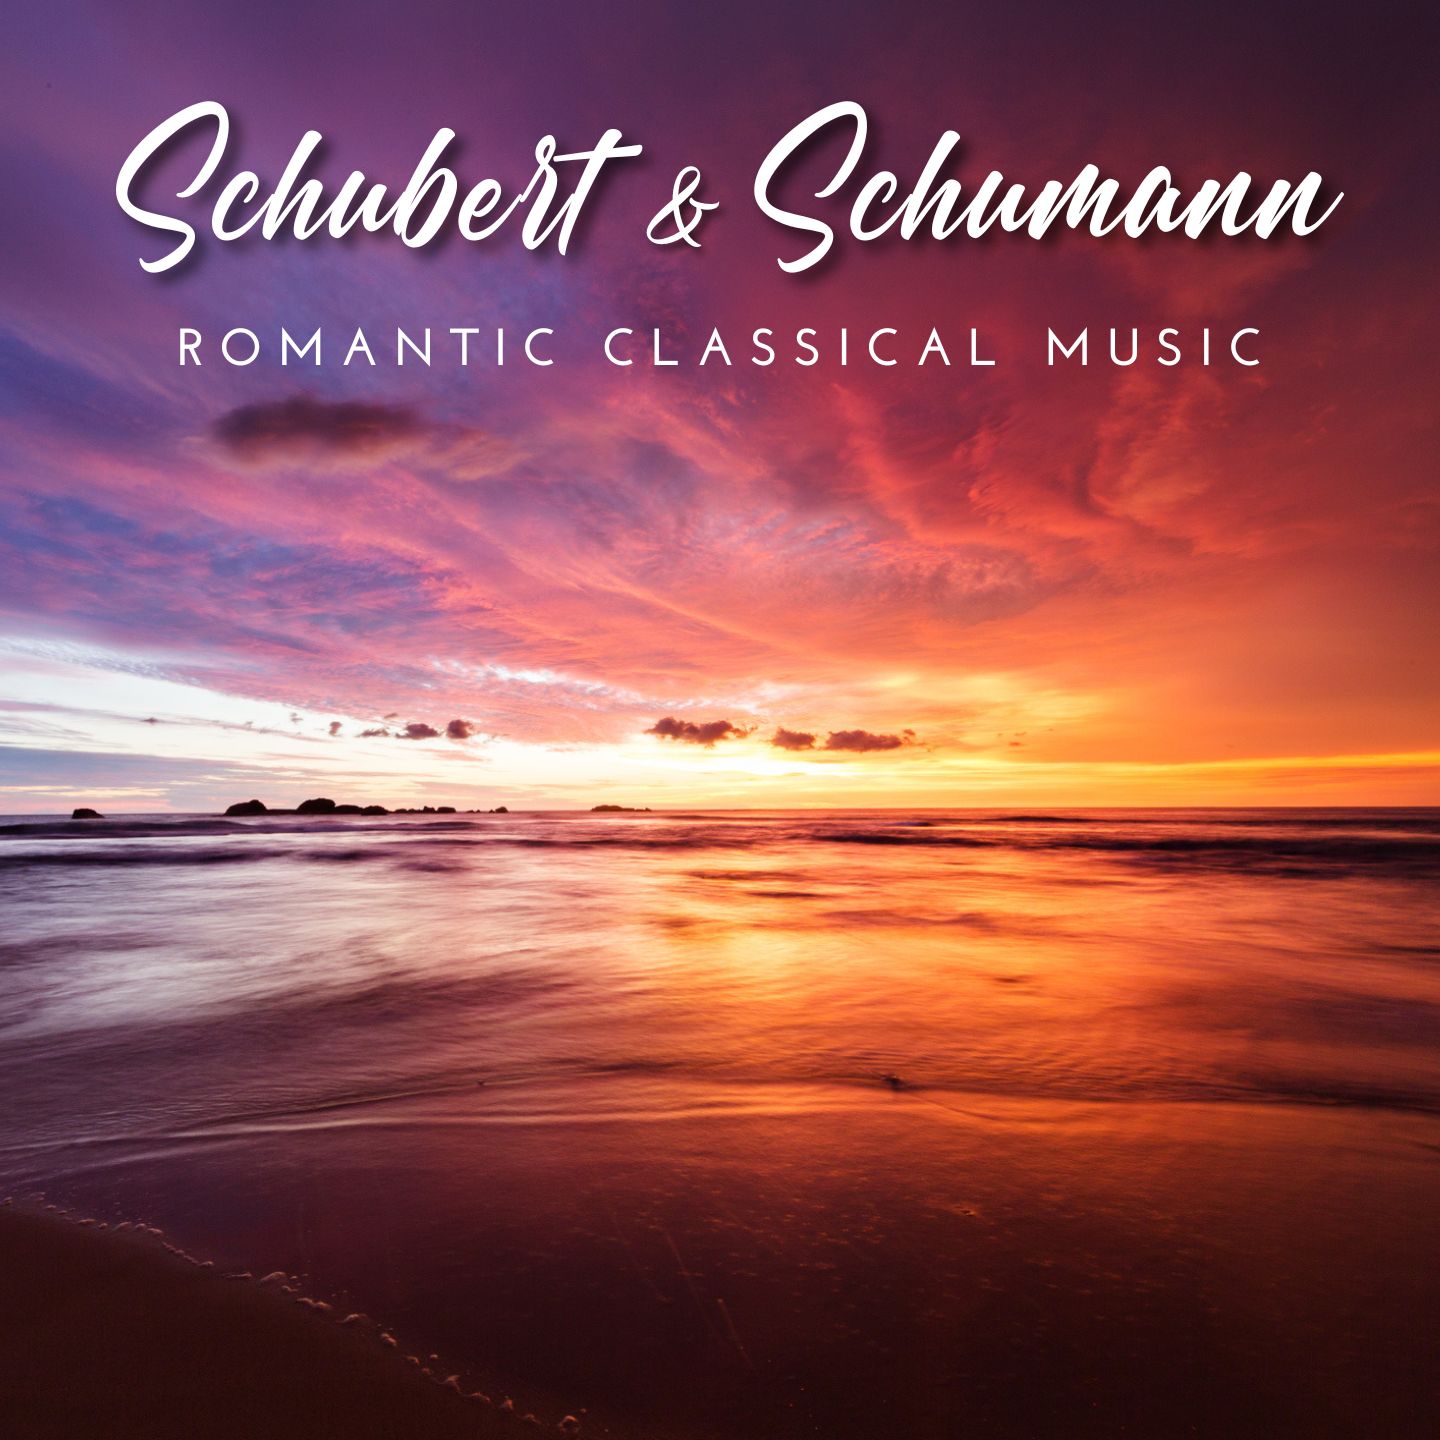 Schubert & Schumann